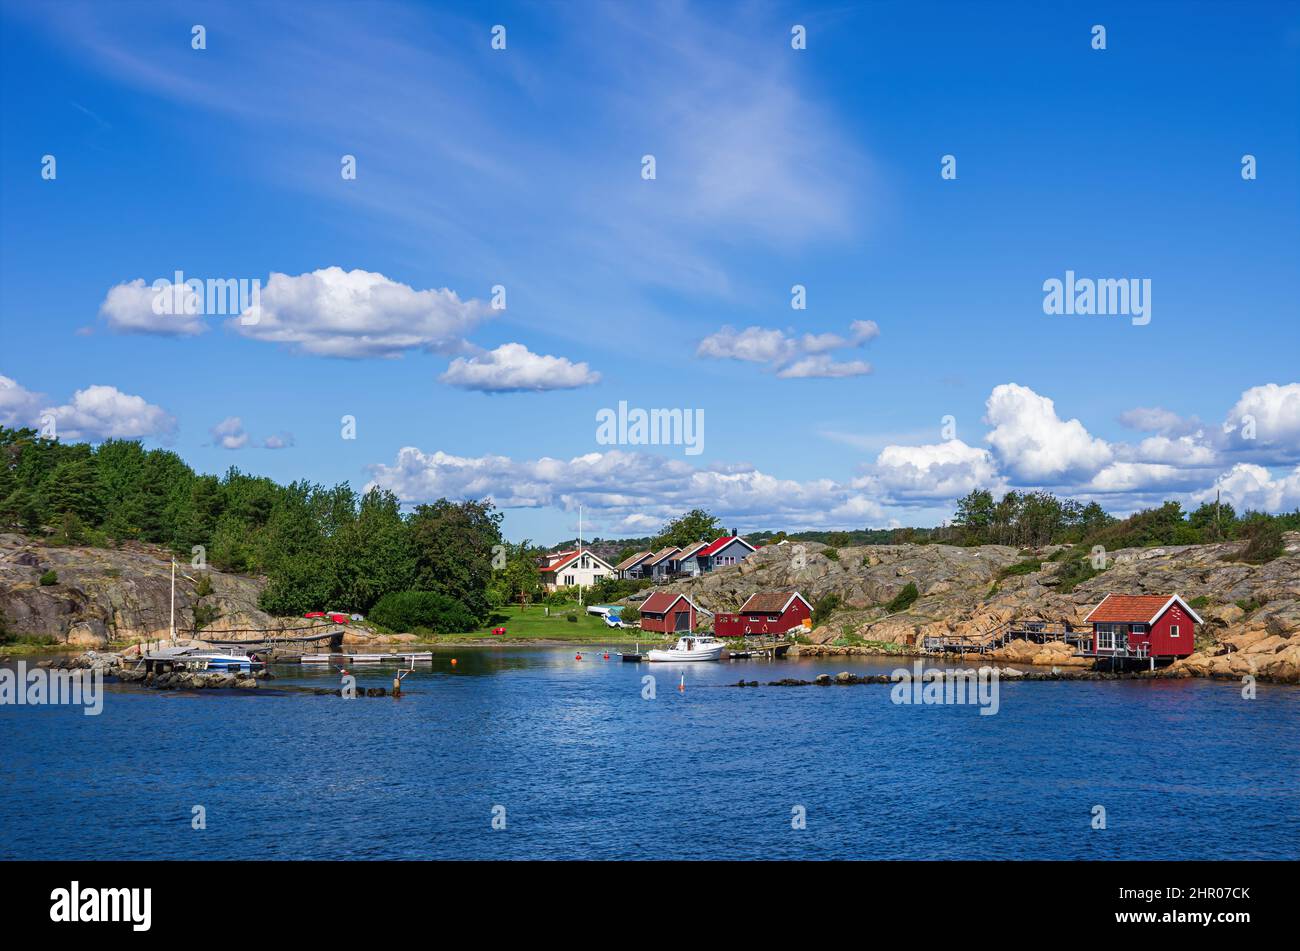 Strömstad, Bohuslän, Västra Götalands län, Sweden: Picturesque rocky coast with small settlement and marina on an offshore island. Stock Photo